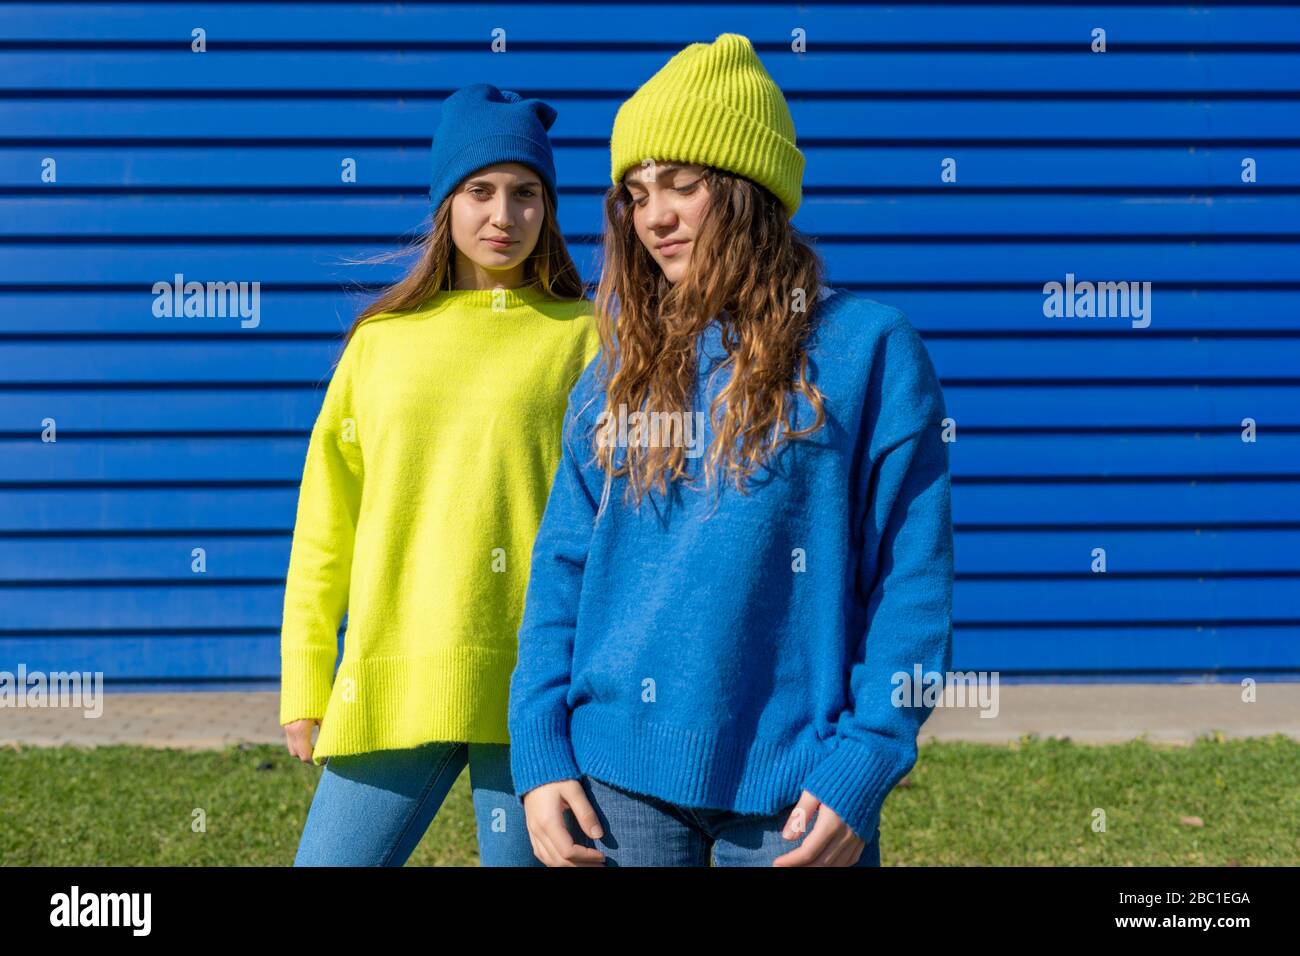 Ritratto di due ragazze adolescenti che indossano abiti corrispondenti di fronte a sfondo blu Foto Stock